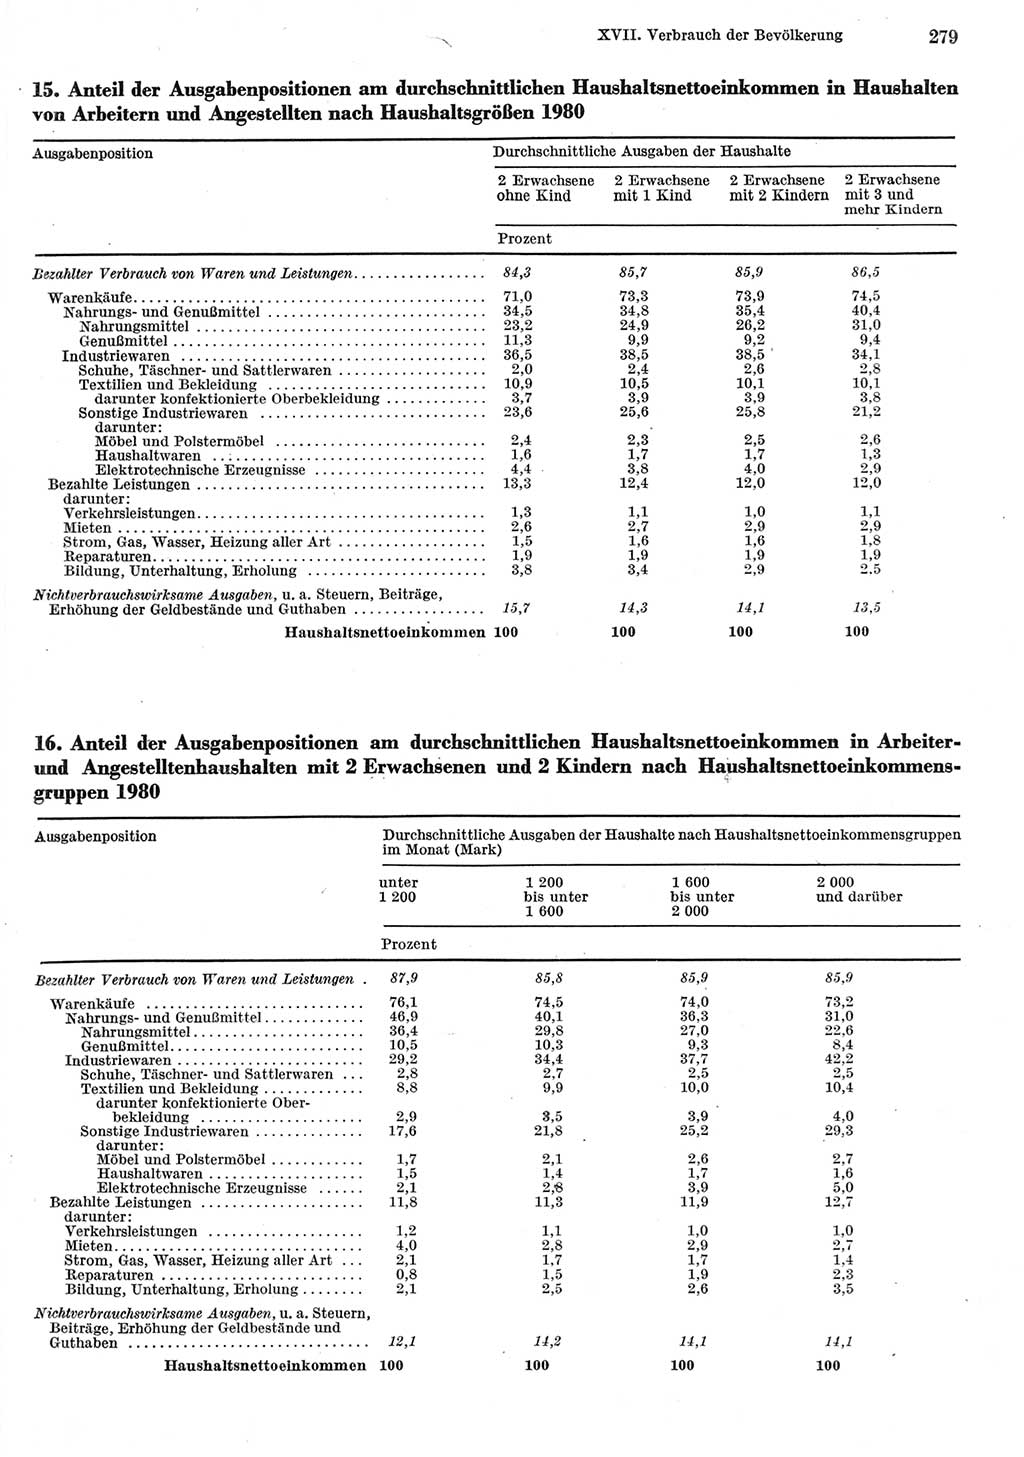 Statistisches Jahrbuch der Deutschen Demokratischen Republik (DDR) 1981, Seite 279 (Stat. Jb. DDR 1981, S. 279)